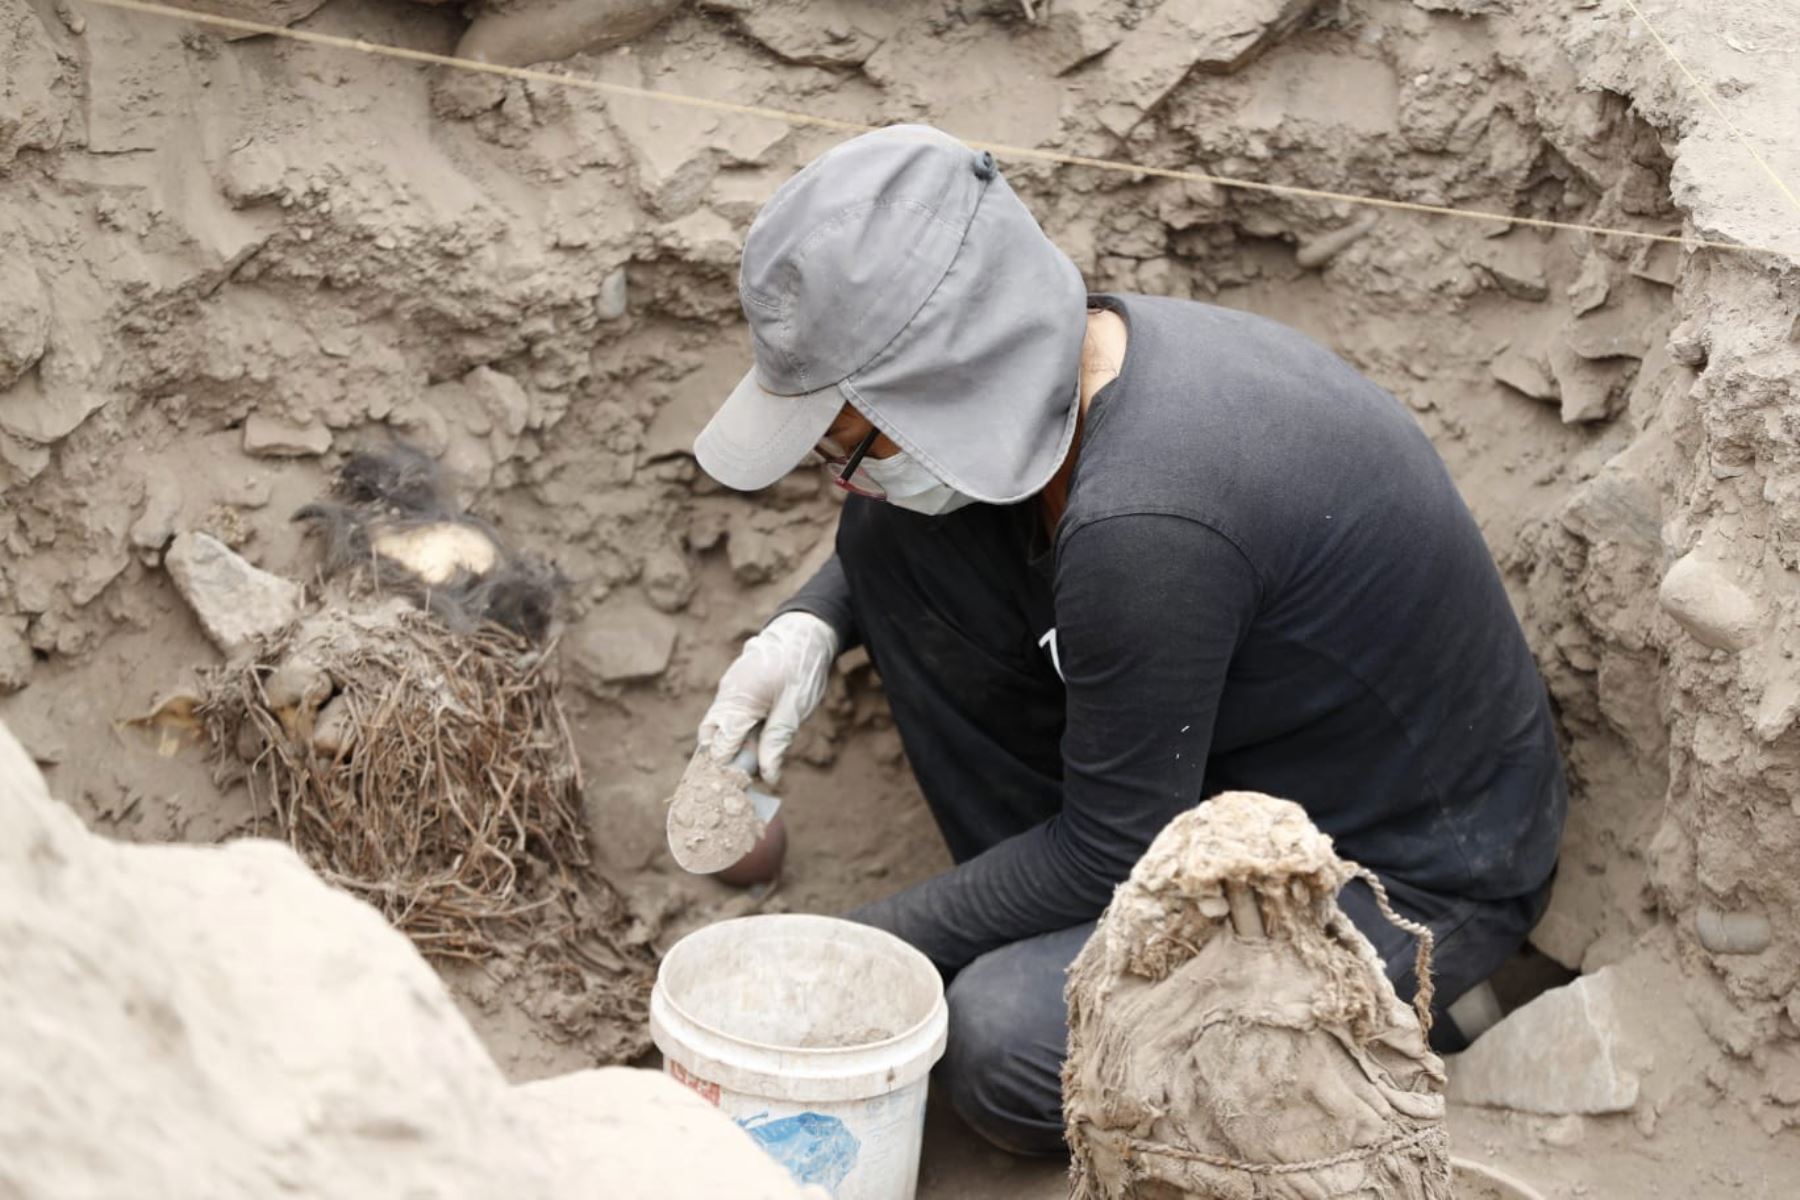 Según los estudios realizados, el complejo arqueológico de la Huaca La Florida tendría unos 3500 años de antigüedad, mientras que los restos funerarios y cerámicos unos 1000 años. Foto: ANDINA/ Daniel Bracamonte